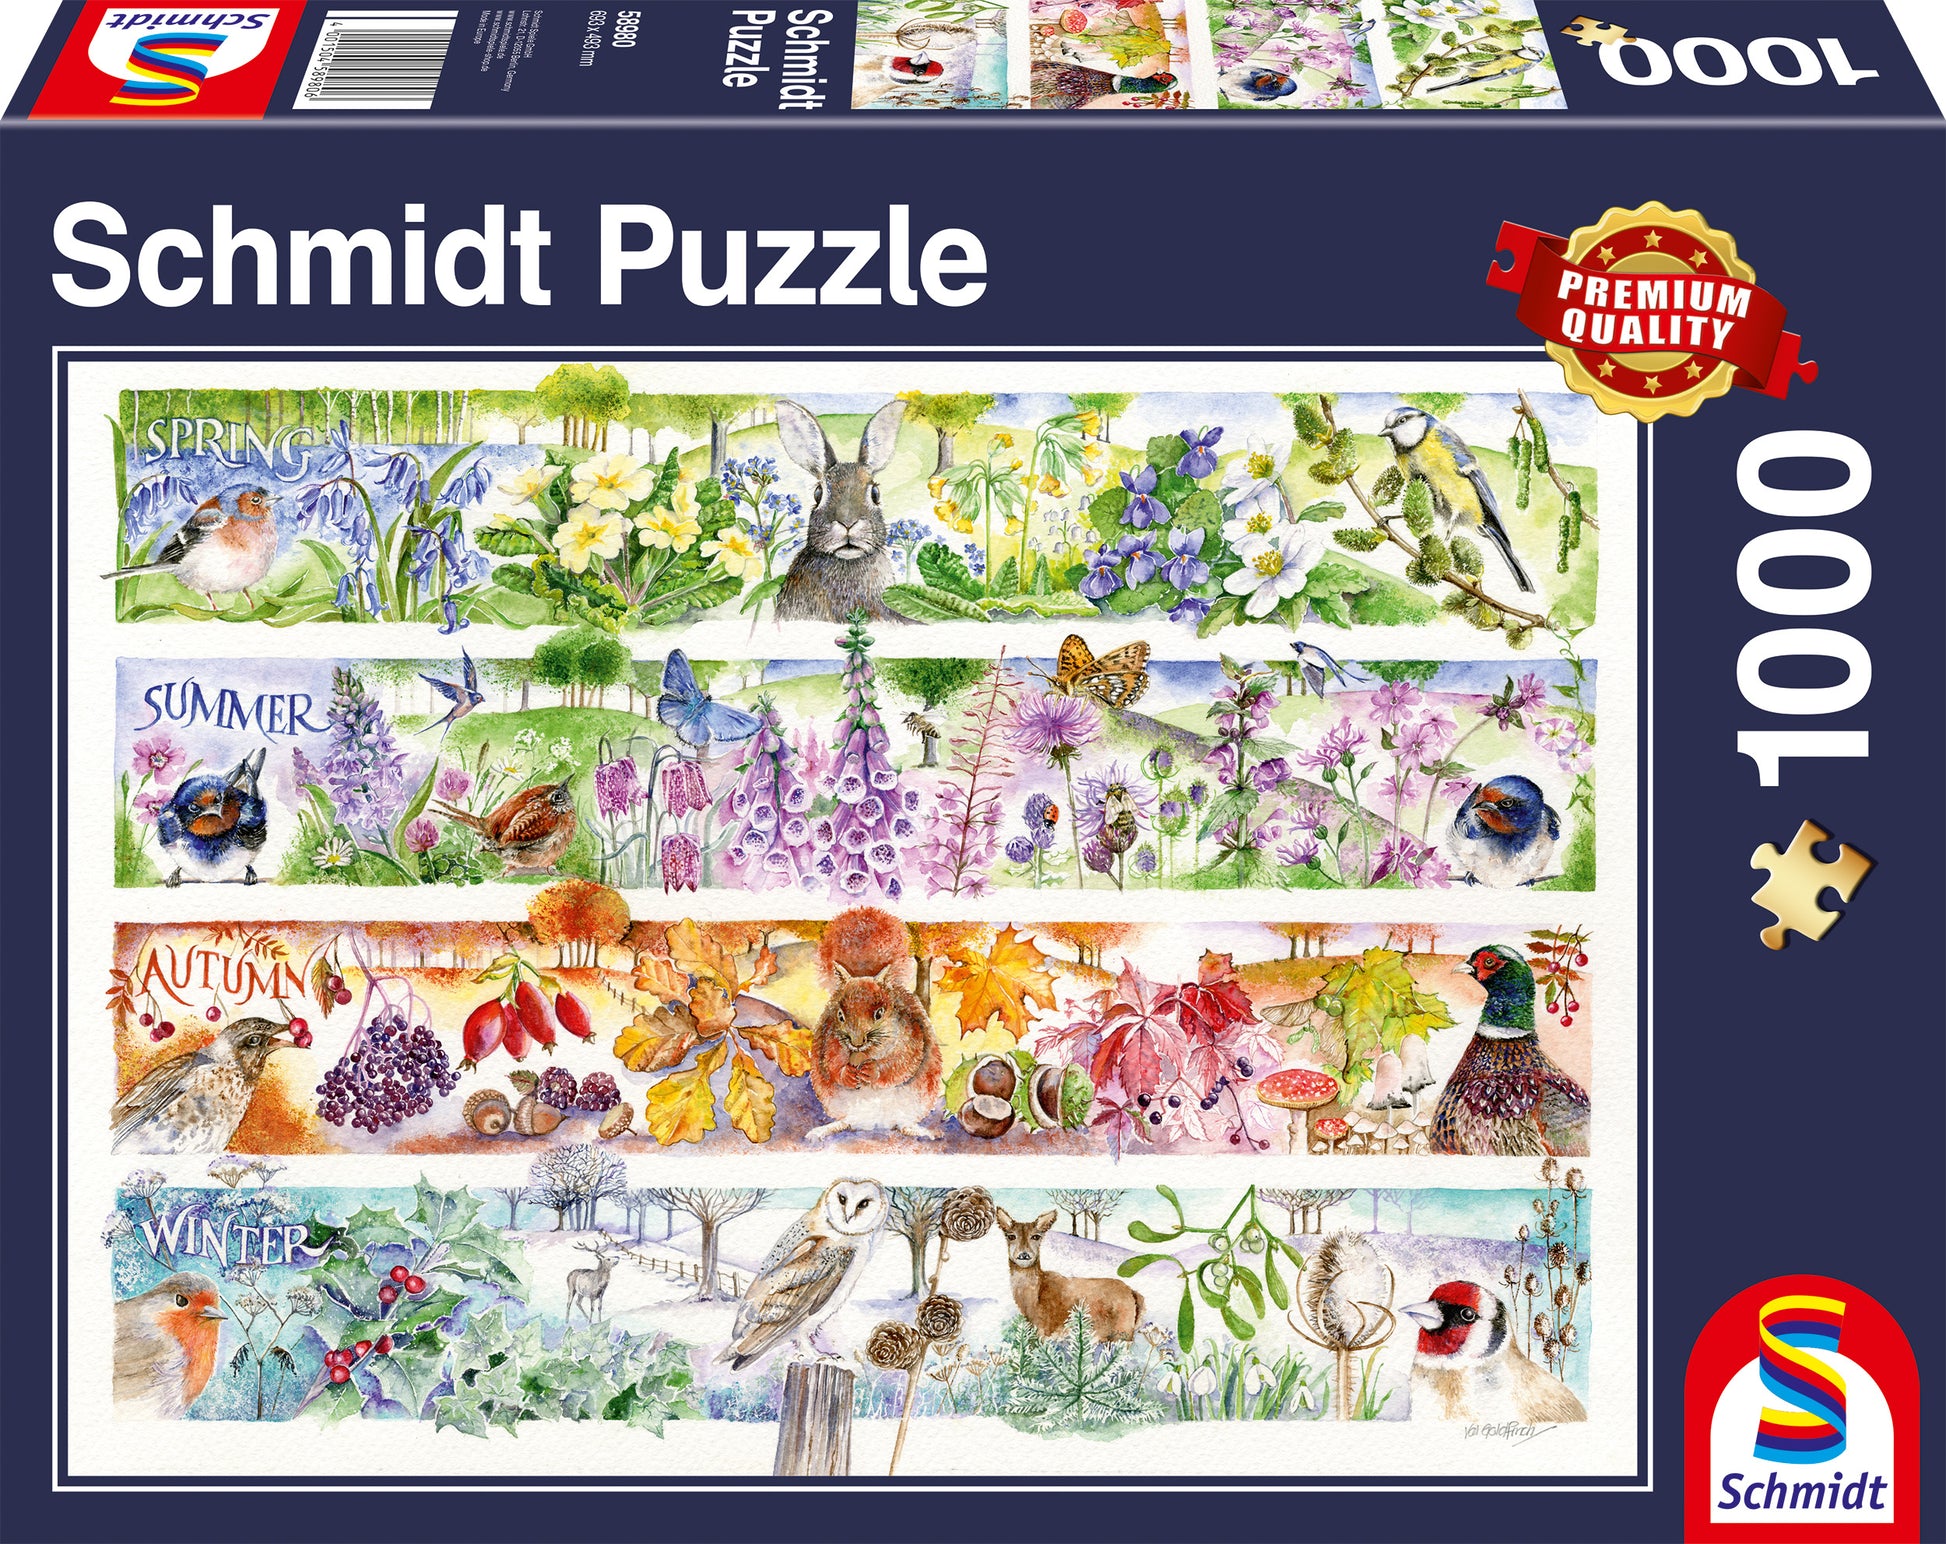 puzzle 1000